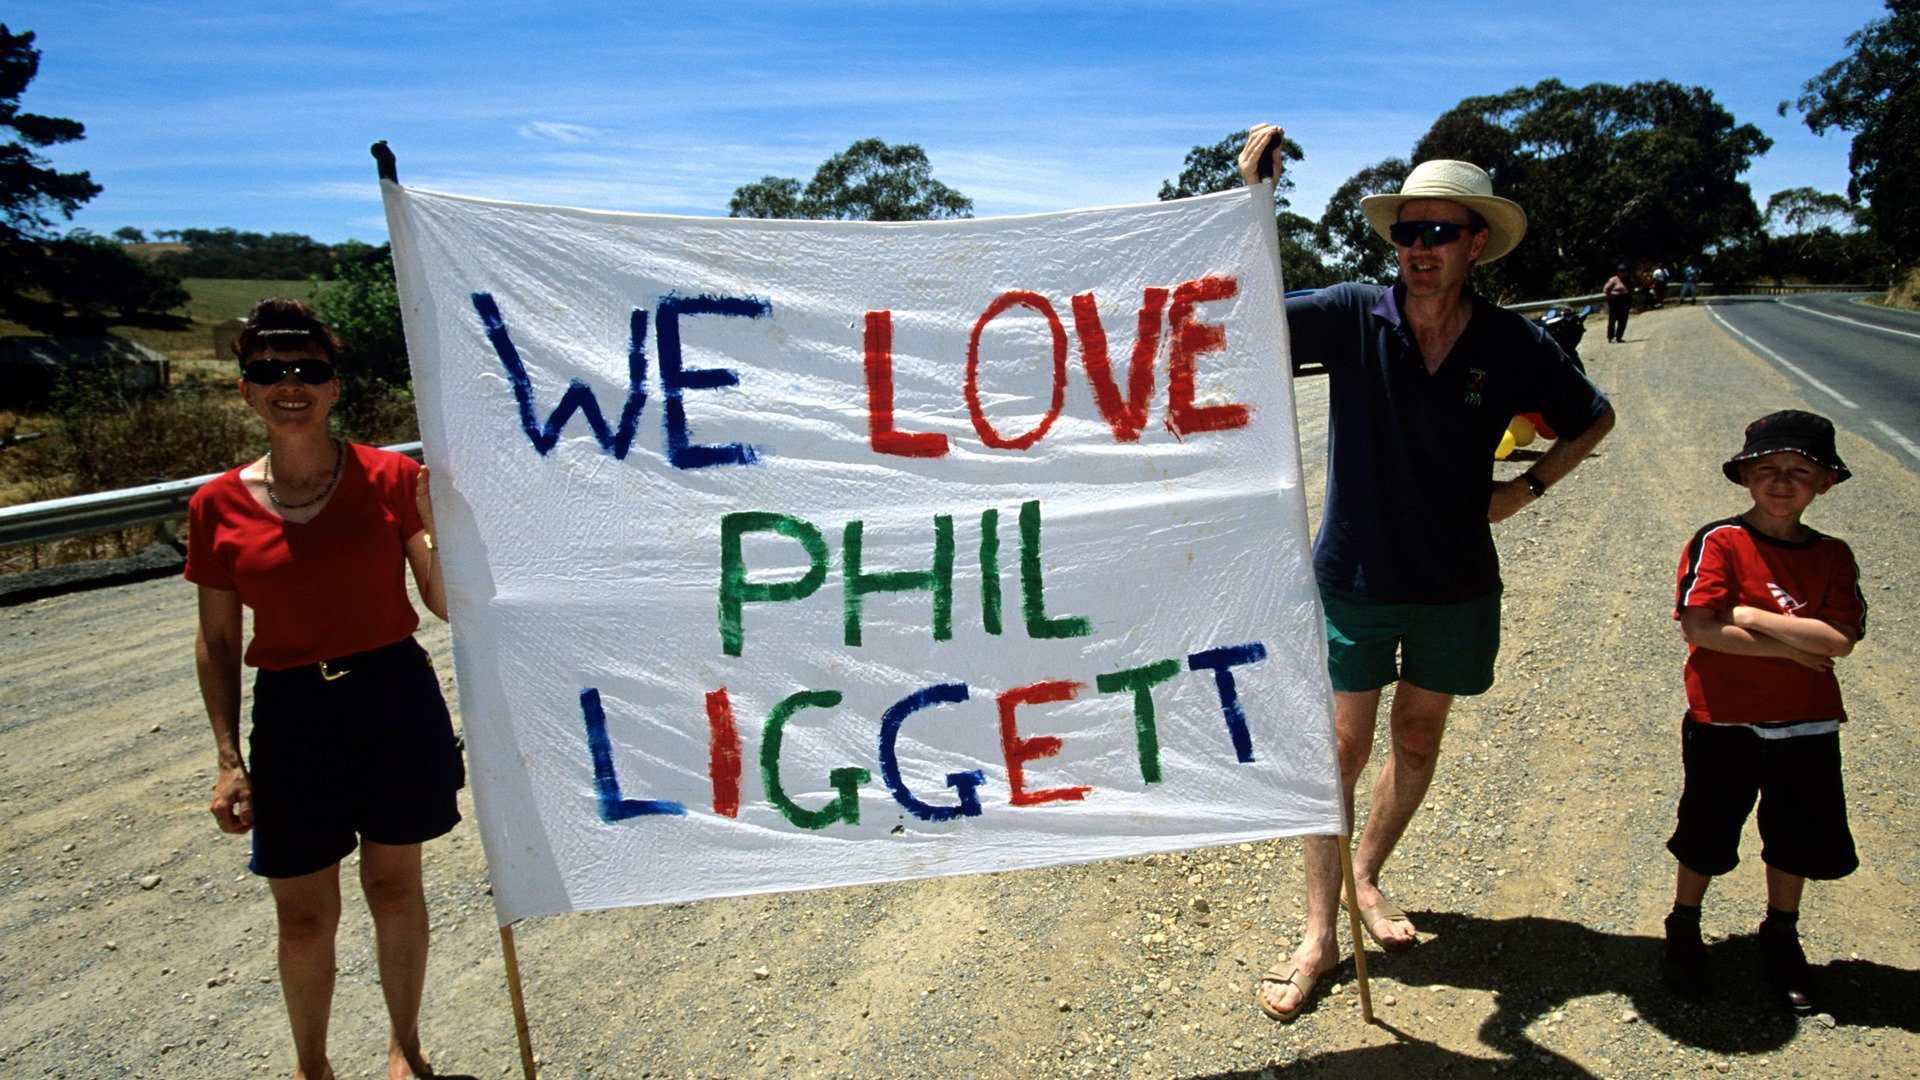 Phil Liggett